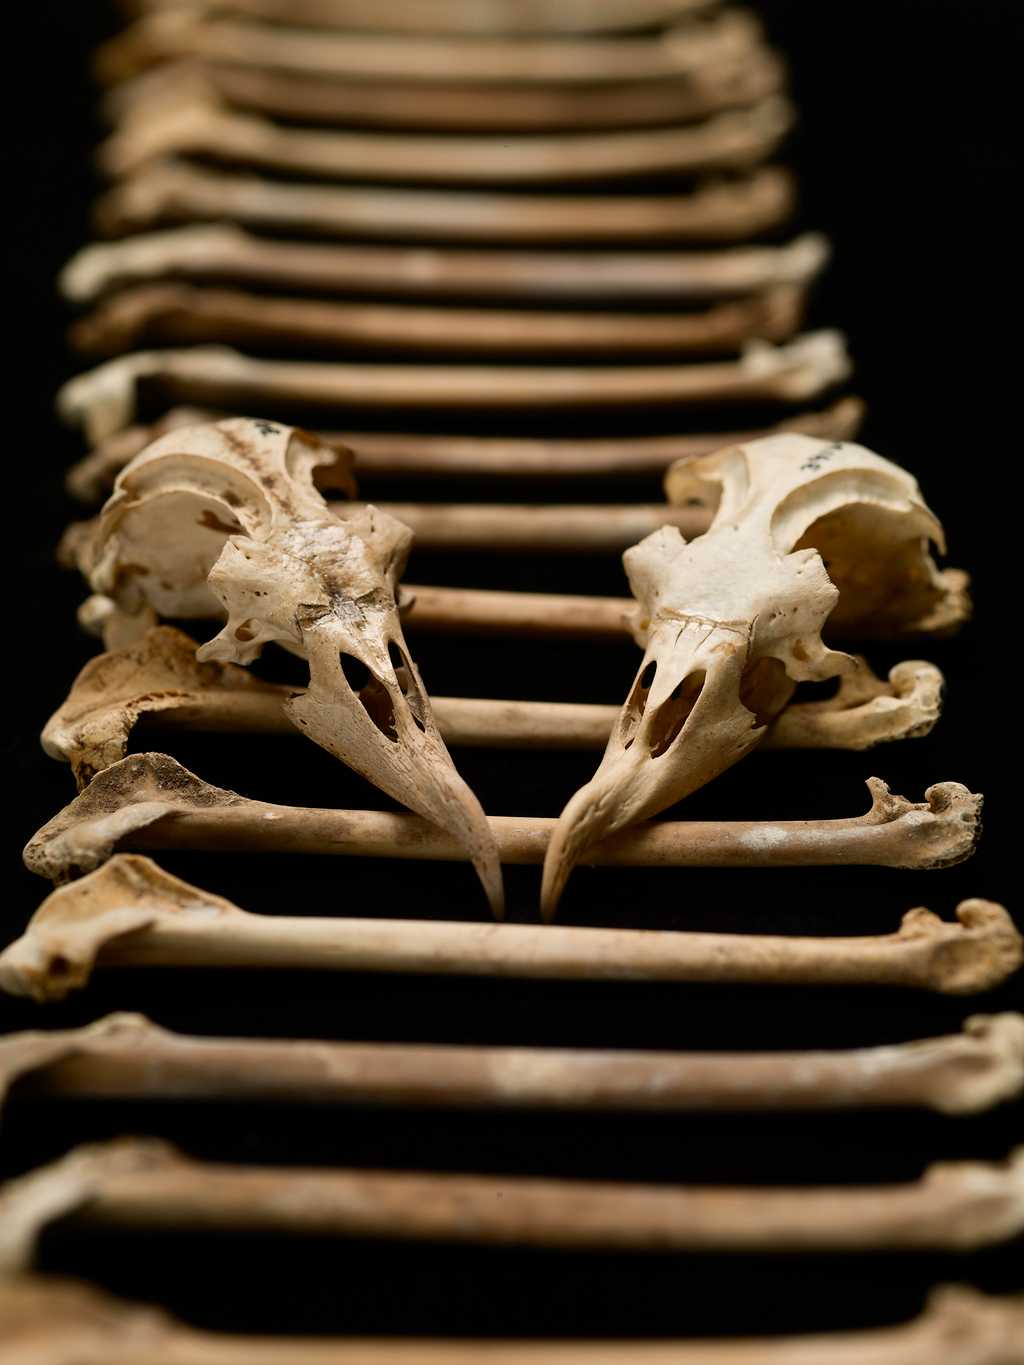 Des chercheurs ont récolté 17.000 ossements de pétrels des Hawaï et&nbsp;ont étudié leur composition chimique. Ils ont ainsi pu déterminer l'évolution du régime alimentaire de ces oiseaux marins sur 4.000 ans d'histoire. ©&nbsp;Brittany Hance